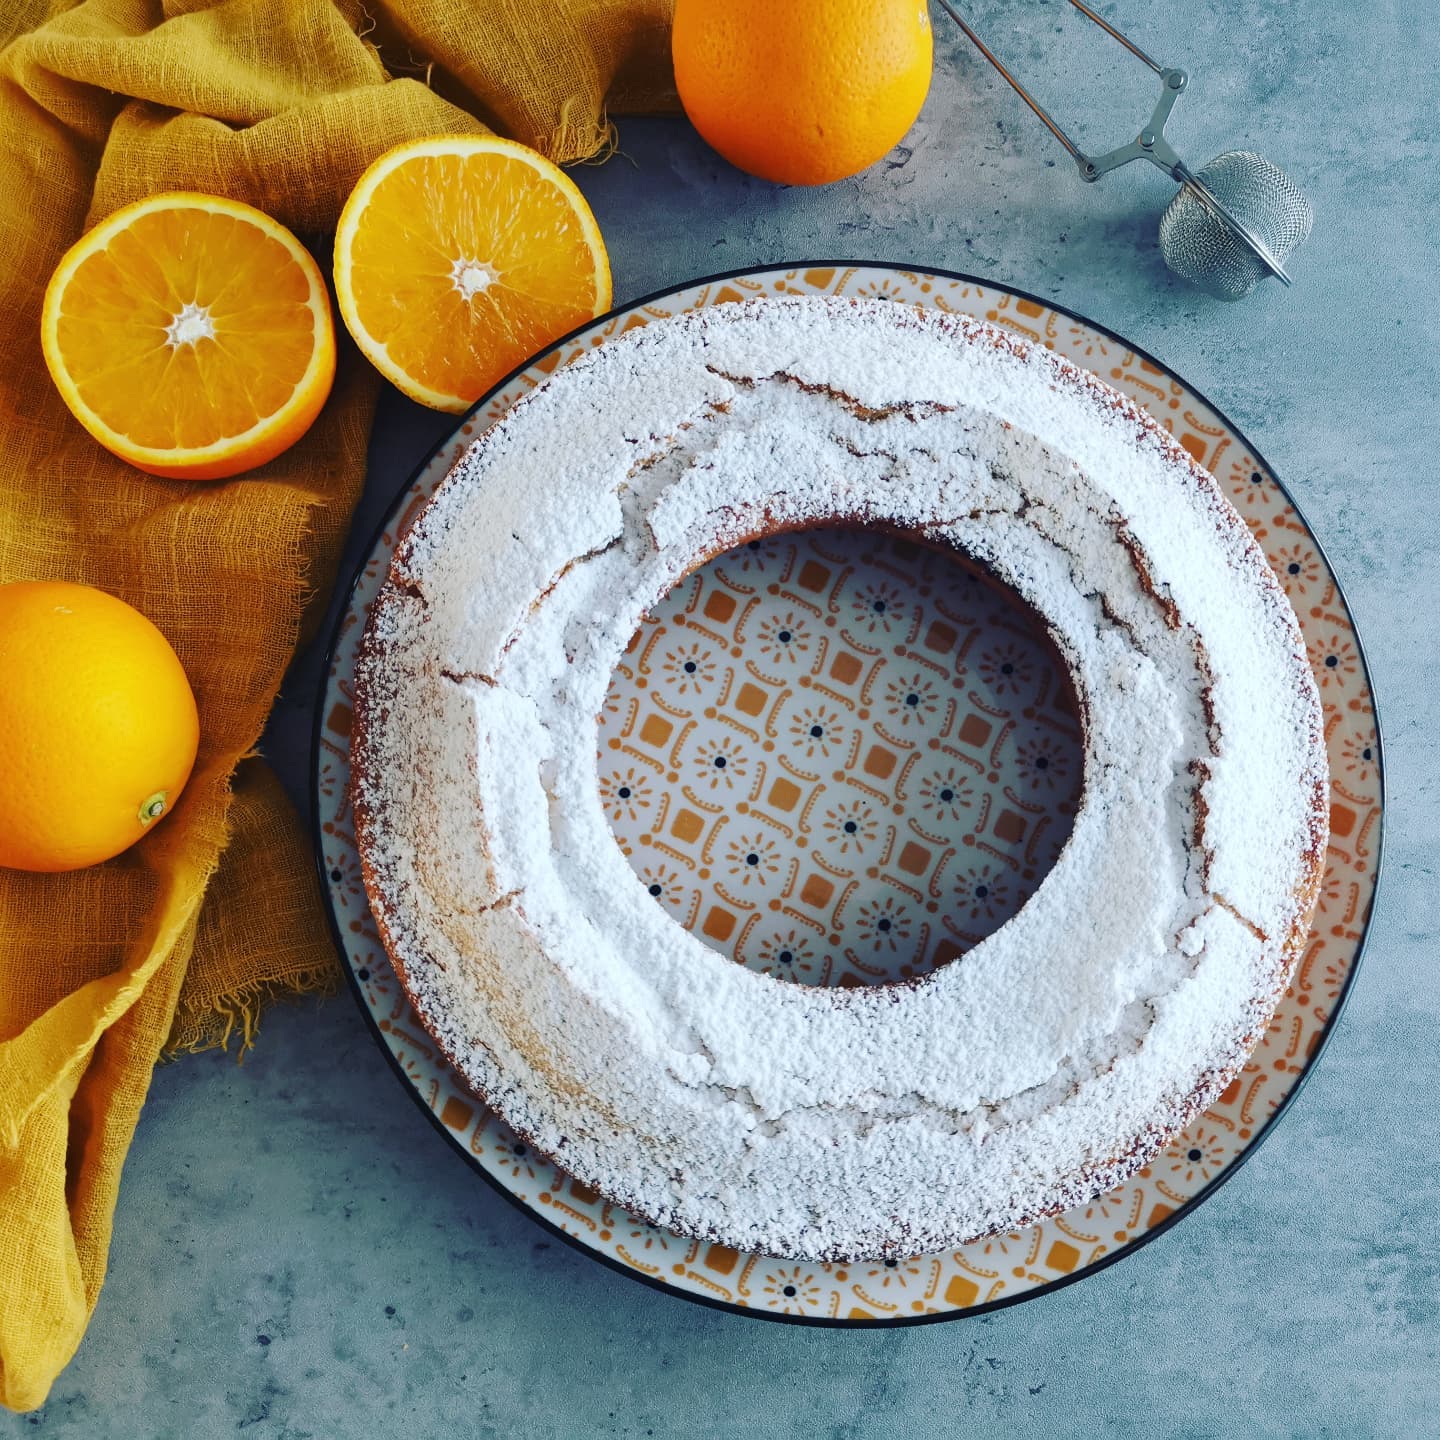 Aujourd'hui, gâteau sans œufs, beurre ni lait.

Parce que connaitre une recette sans ses ingrédients est toujours utile lorsque l'on des convives vegans ou qui ont des allergies alimentaires.

Cette fois ci le gâteau était à l'orange mais il est déclinable au chocolat, café, citron, vanille, noix de coco...

La recette sur le blog. Lien en bio⬆️⬆️⬆️

#cakemaison #recettefacile #recettevegan #sansoeufs #sanslactose #food #blog